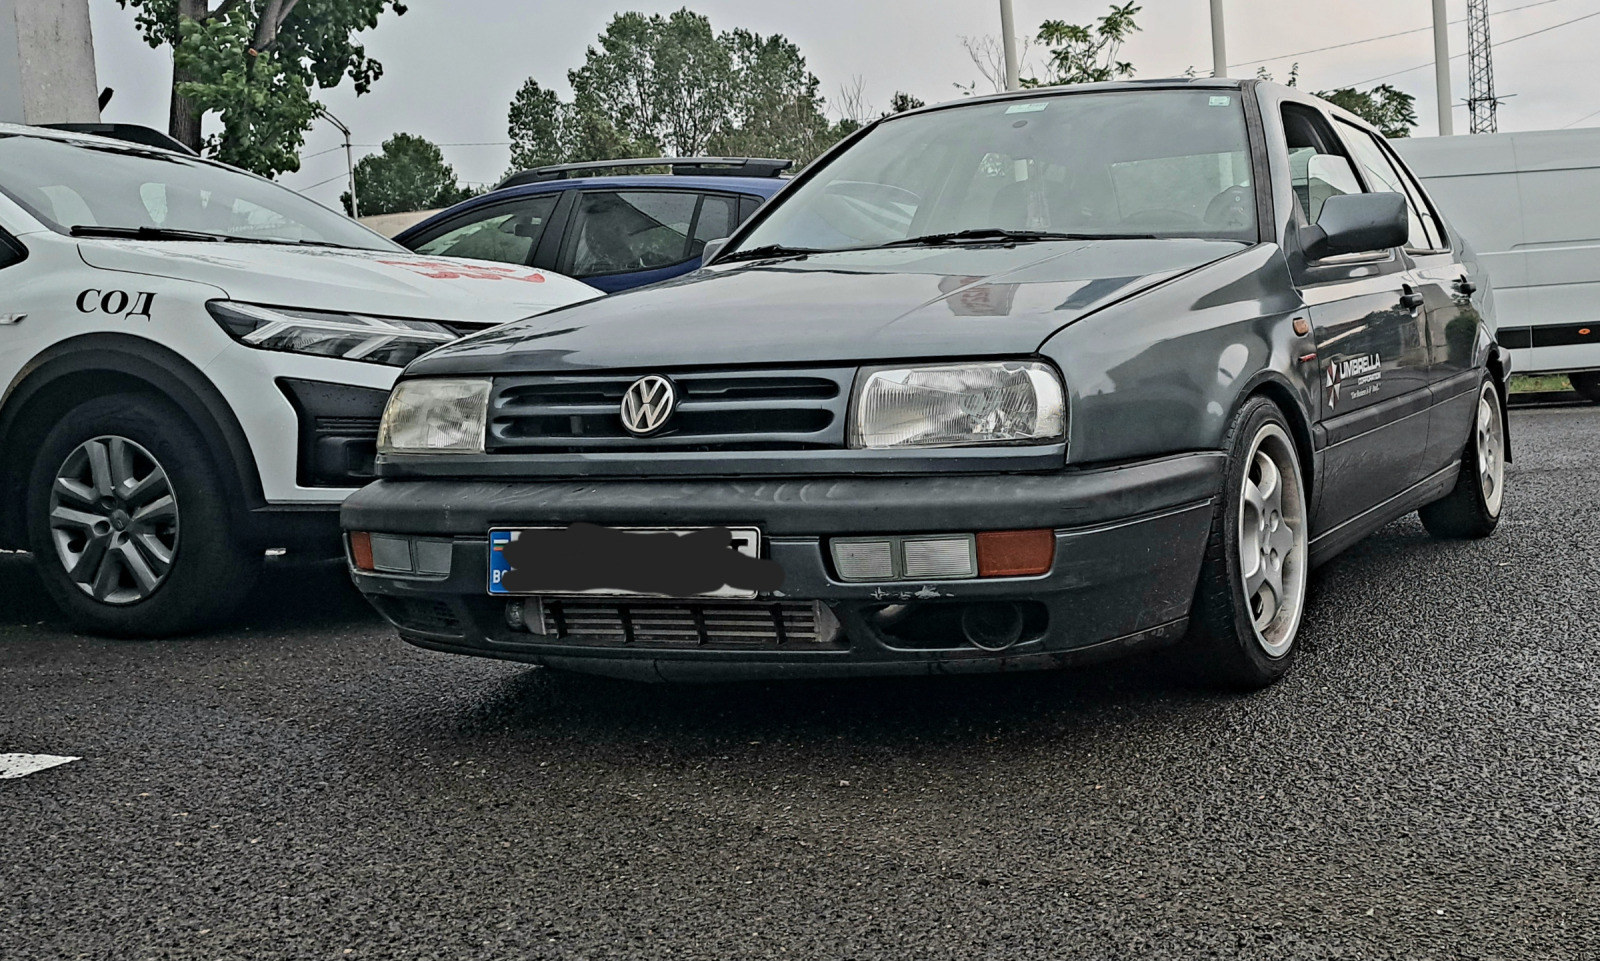 VW Vento 1.8 8v turbo - изображение 1